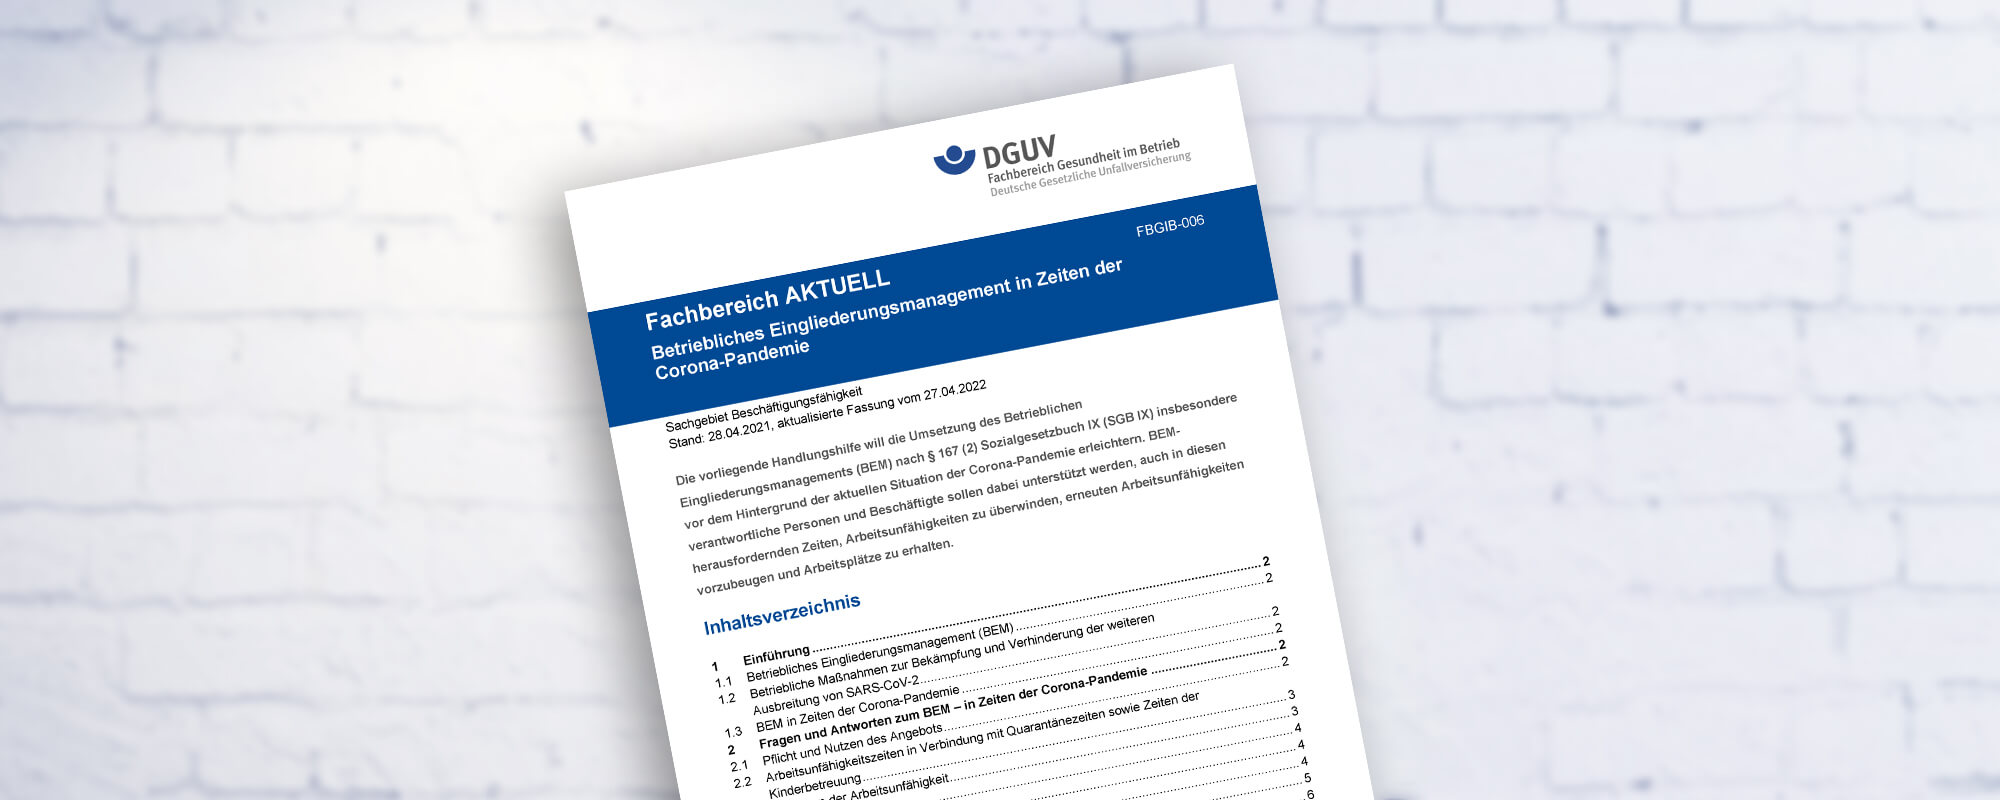 Das Dokument "Fachbereich AKTUELL - Betriebliches Eingliederungsmanagement in Zeiten der Corona-Pandemie"